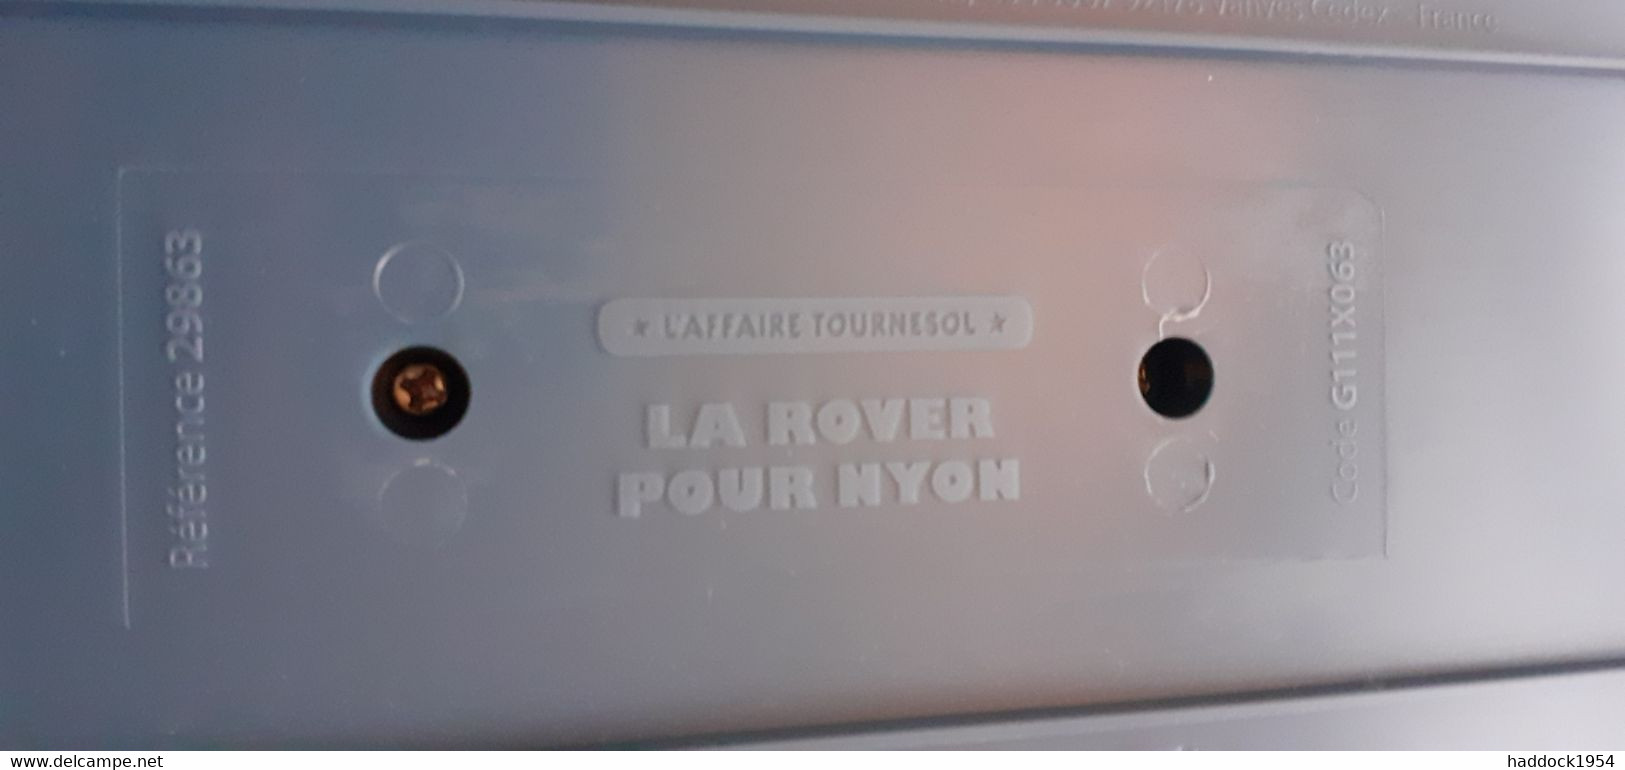 La Rover Pour LYON L'affaire Tournesol TINTIN HERGE Moulinsart - Figuren - Metall